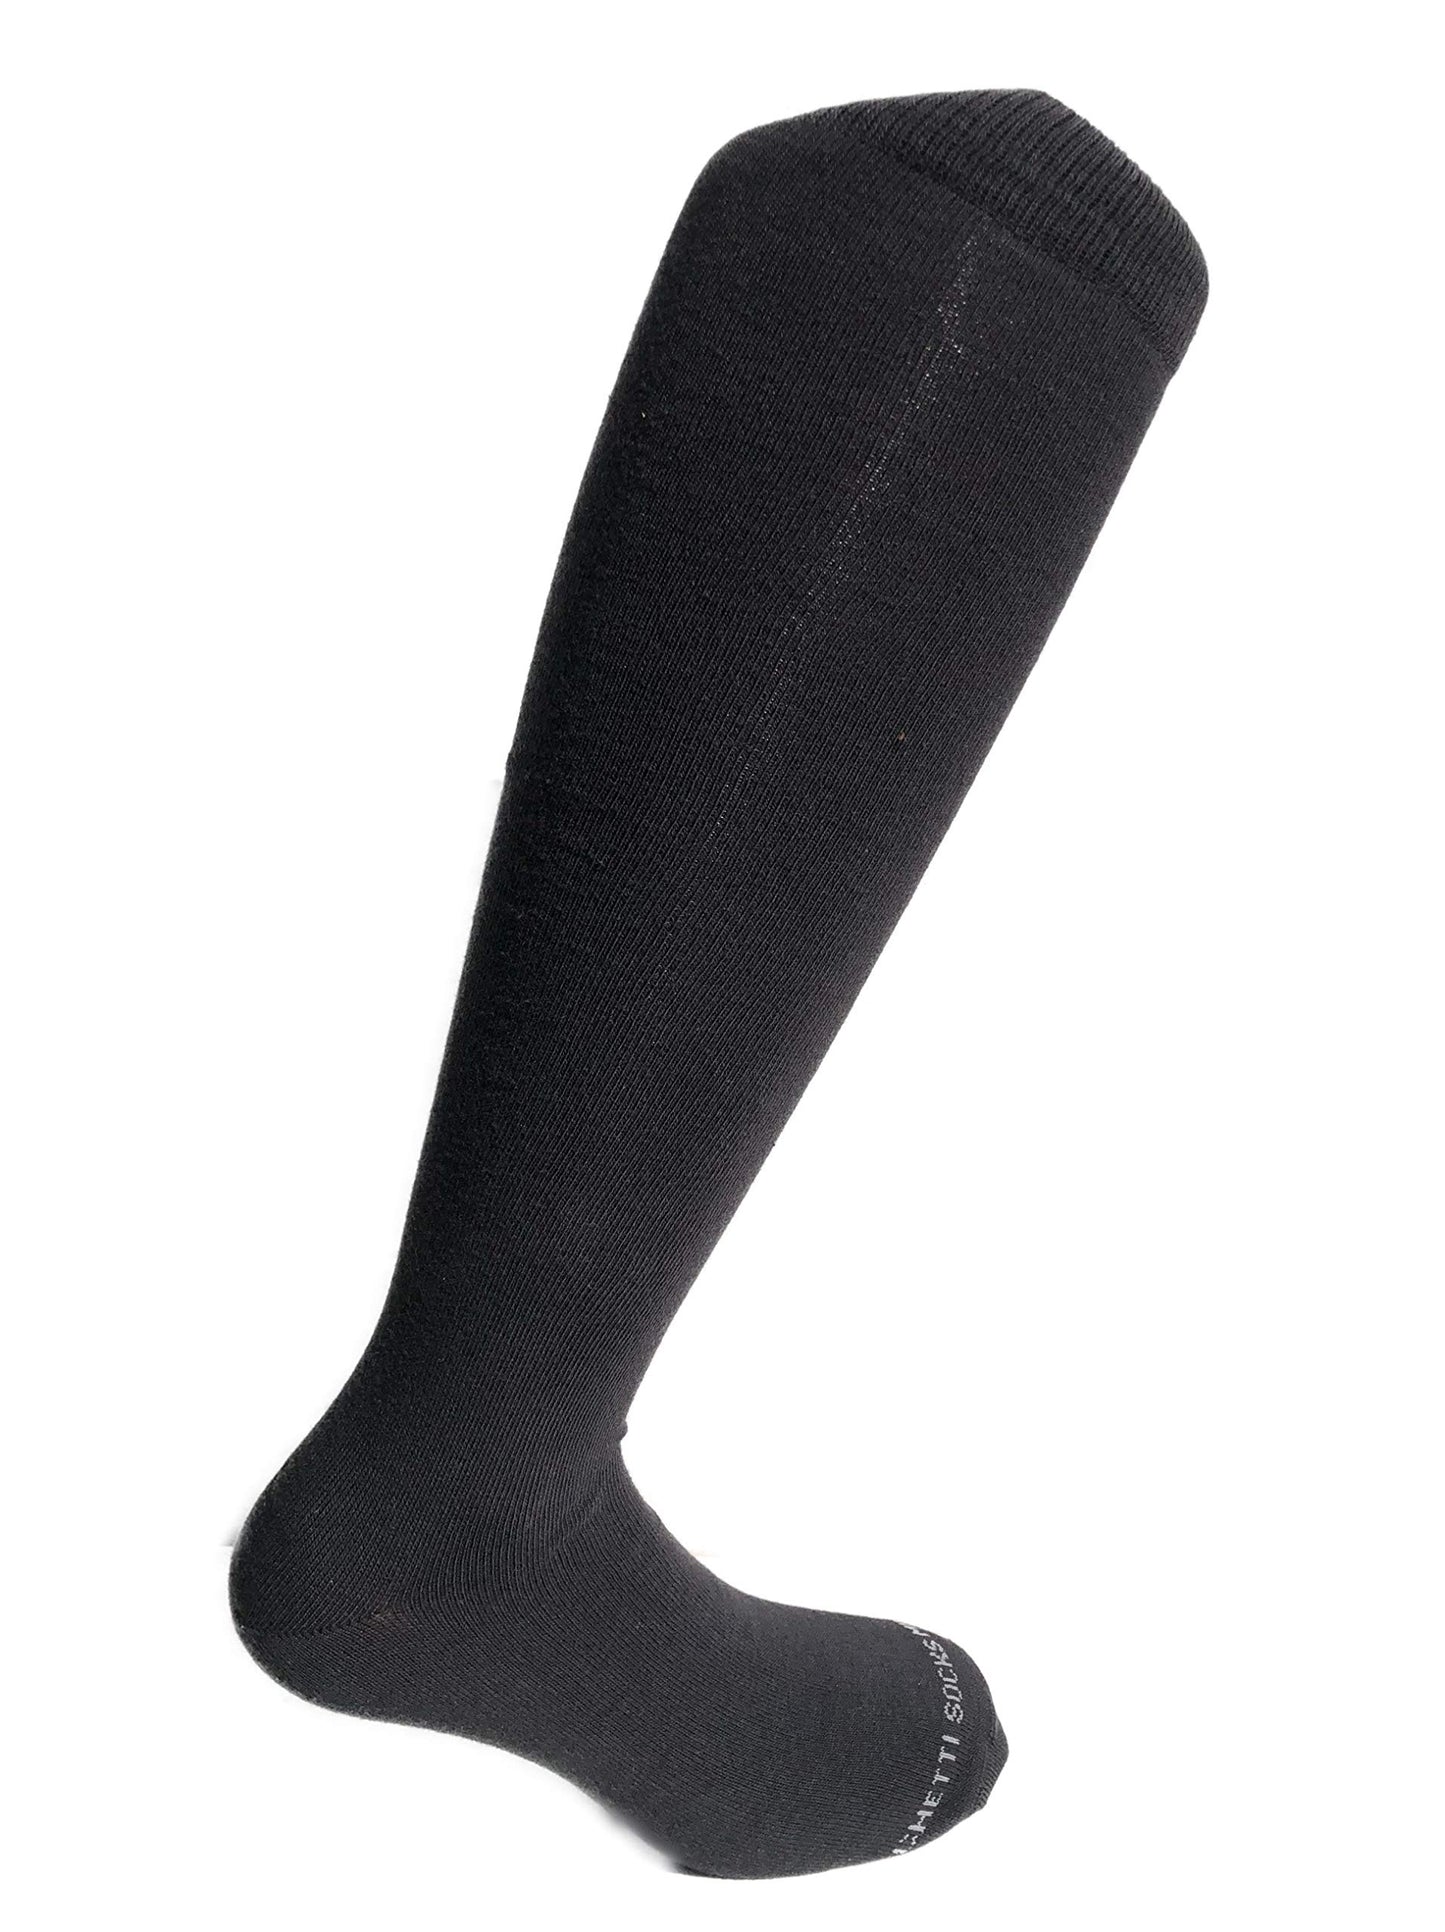 Lucchetti Socks Milano 6 PAIA di calze calzini UOMO LUNGHE caldo cotone ELASTICIZZATE,100% Made in Italy